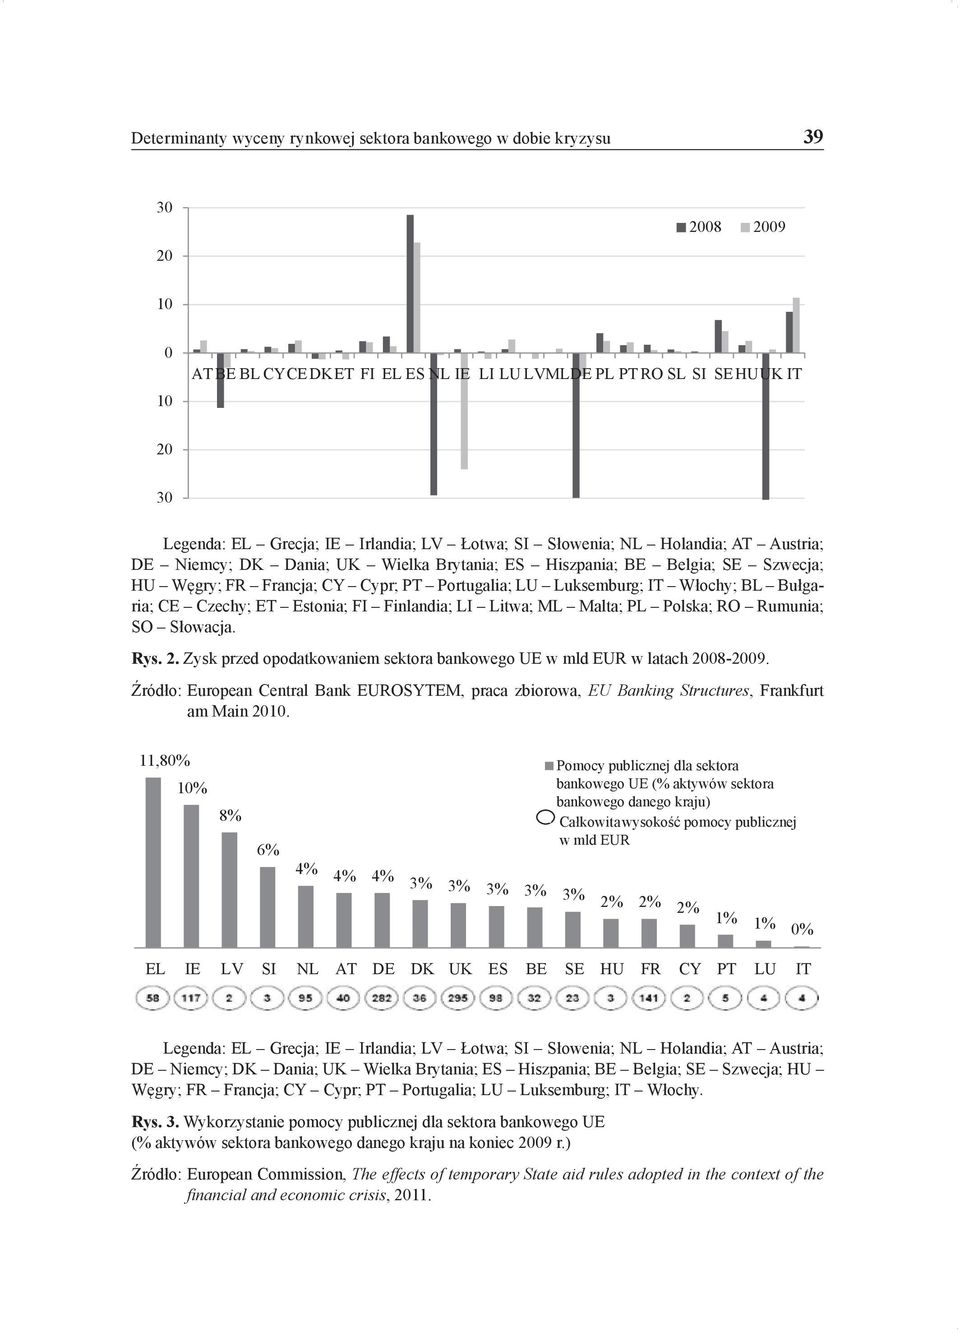 Włochy; BL Bułgaria; CE Czechy; ET Estonia; FI Finlandia; LI Litwa; ML Malta; PL Polska; RO Rumunia; SO Słowacja. Rys. 2. Zysk przed opodatkowaniem sektora bankowego UE w mld EUR w latach 2008-2009.